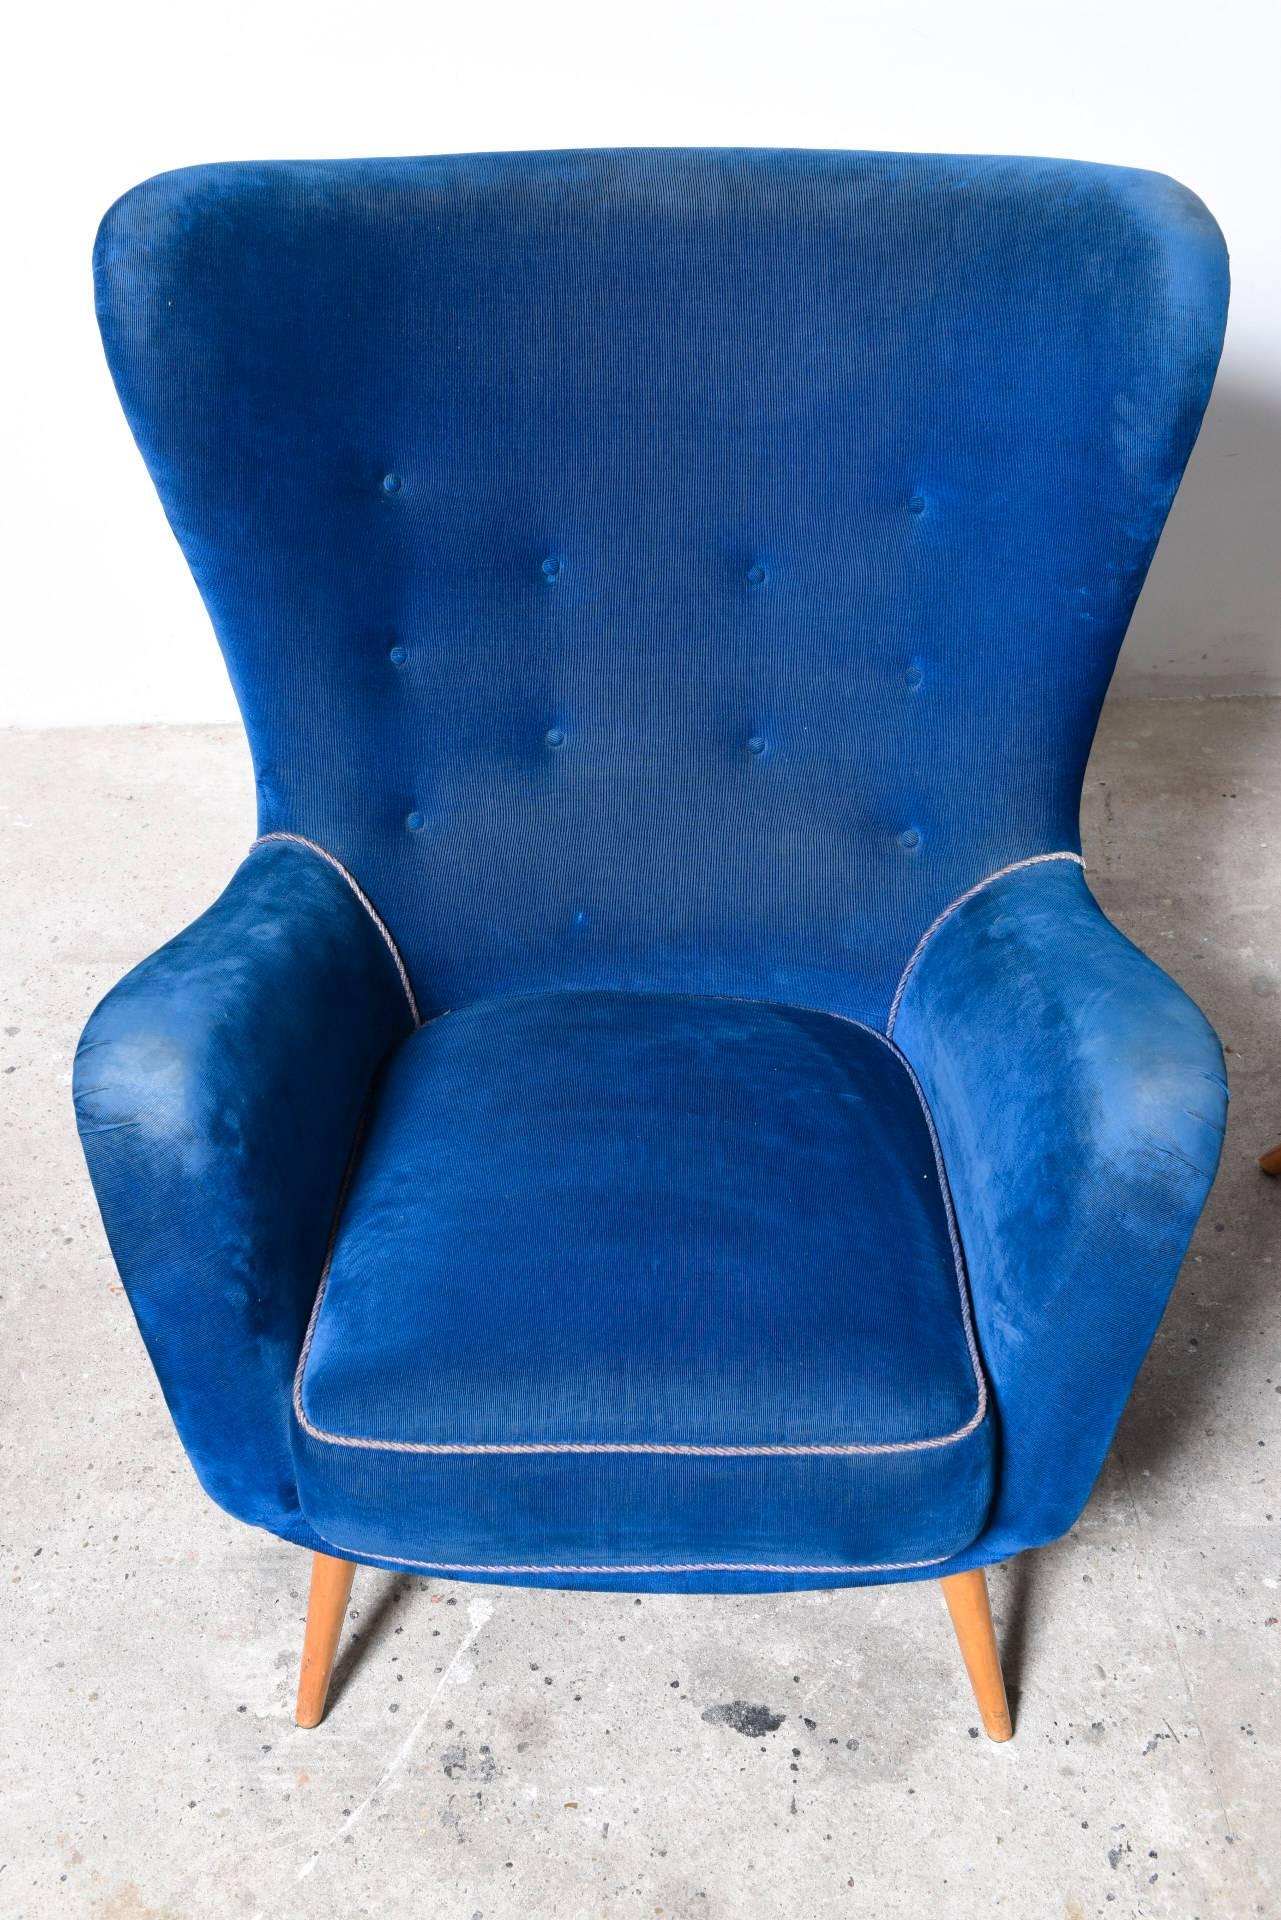 Set of two Large Italian Blue Velvet Wing Back Easy Chair, by Melchiorre Bega 1